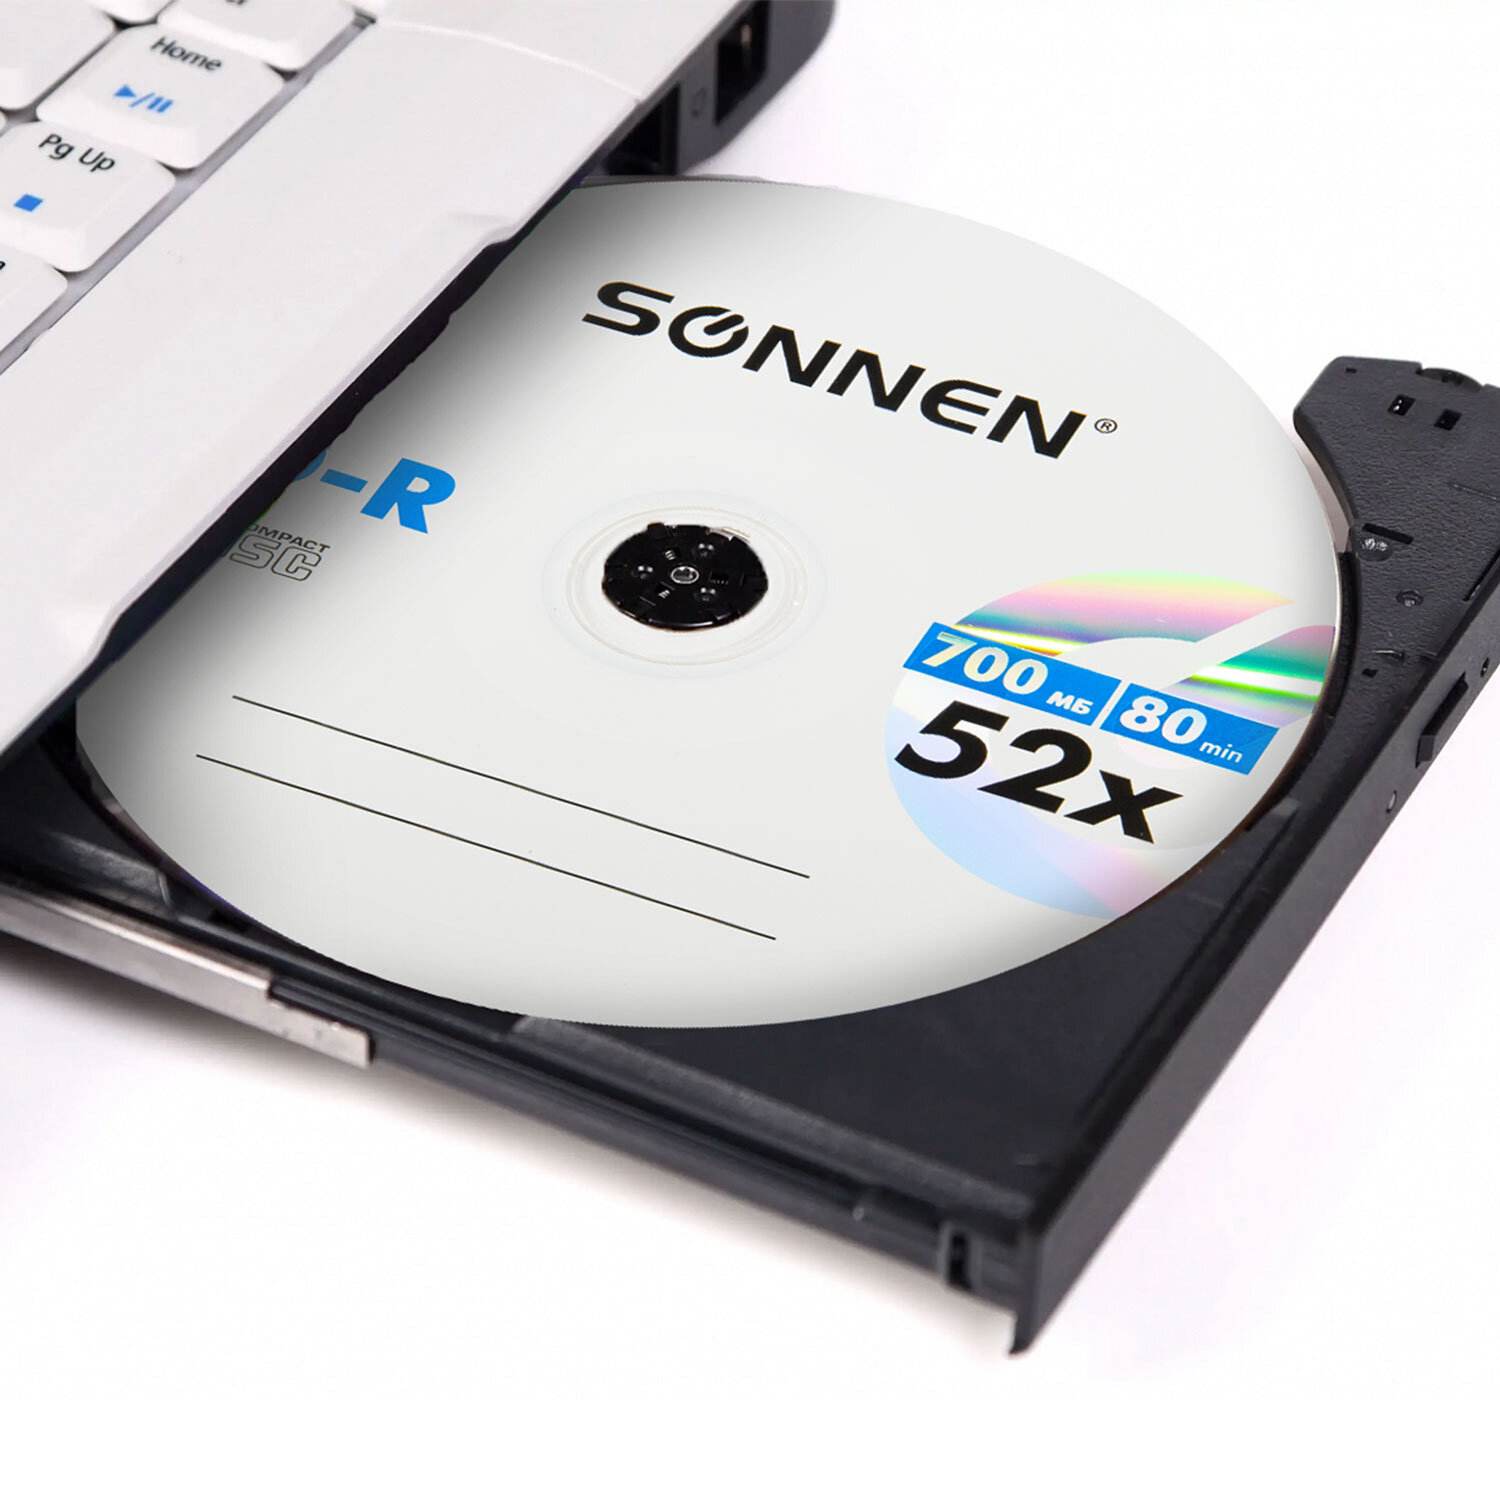 картинка Диски CD-R SONNEN, 50 шт, 52x, сидибокс, 512570 от магазина Альфанит в Кунгуре